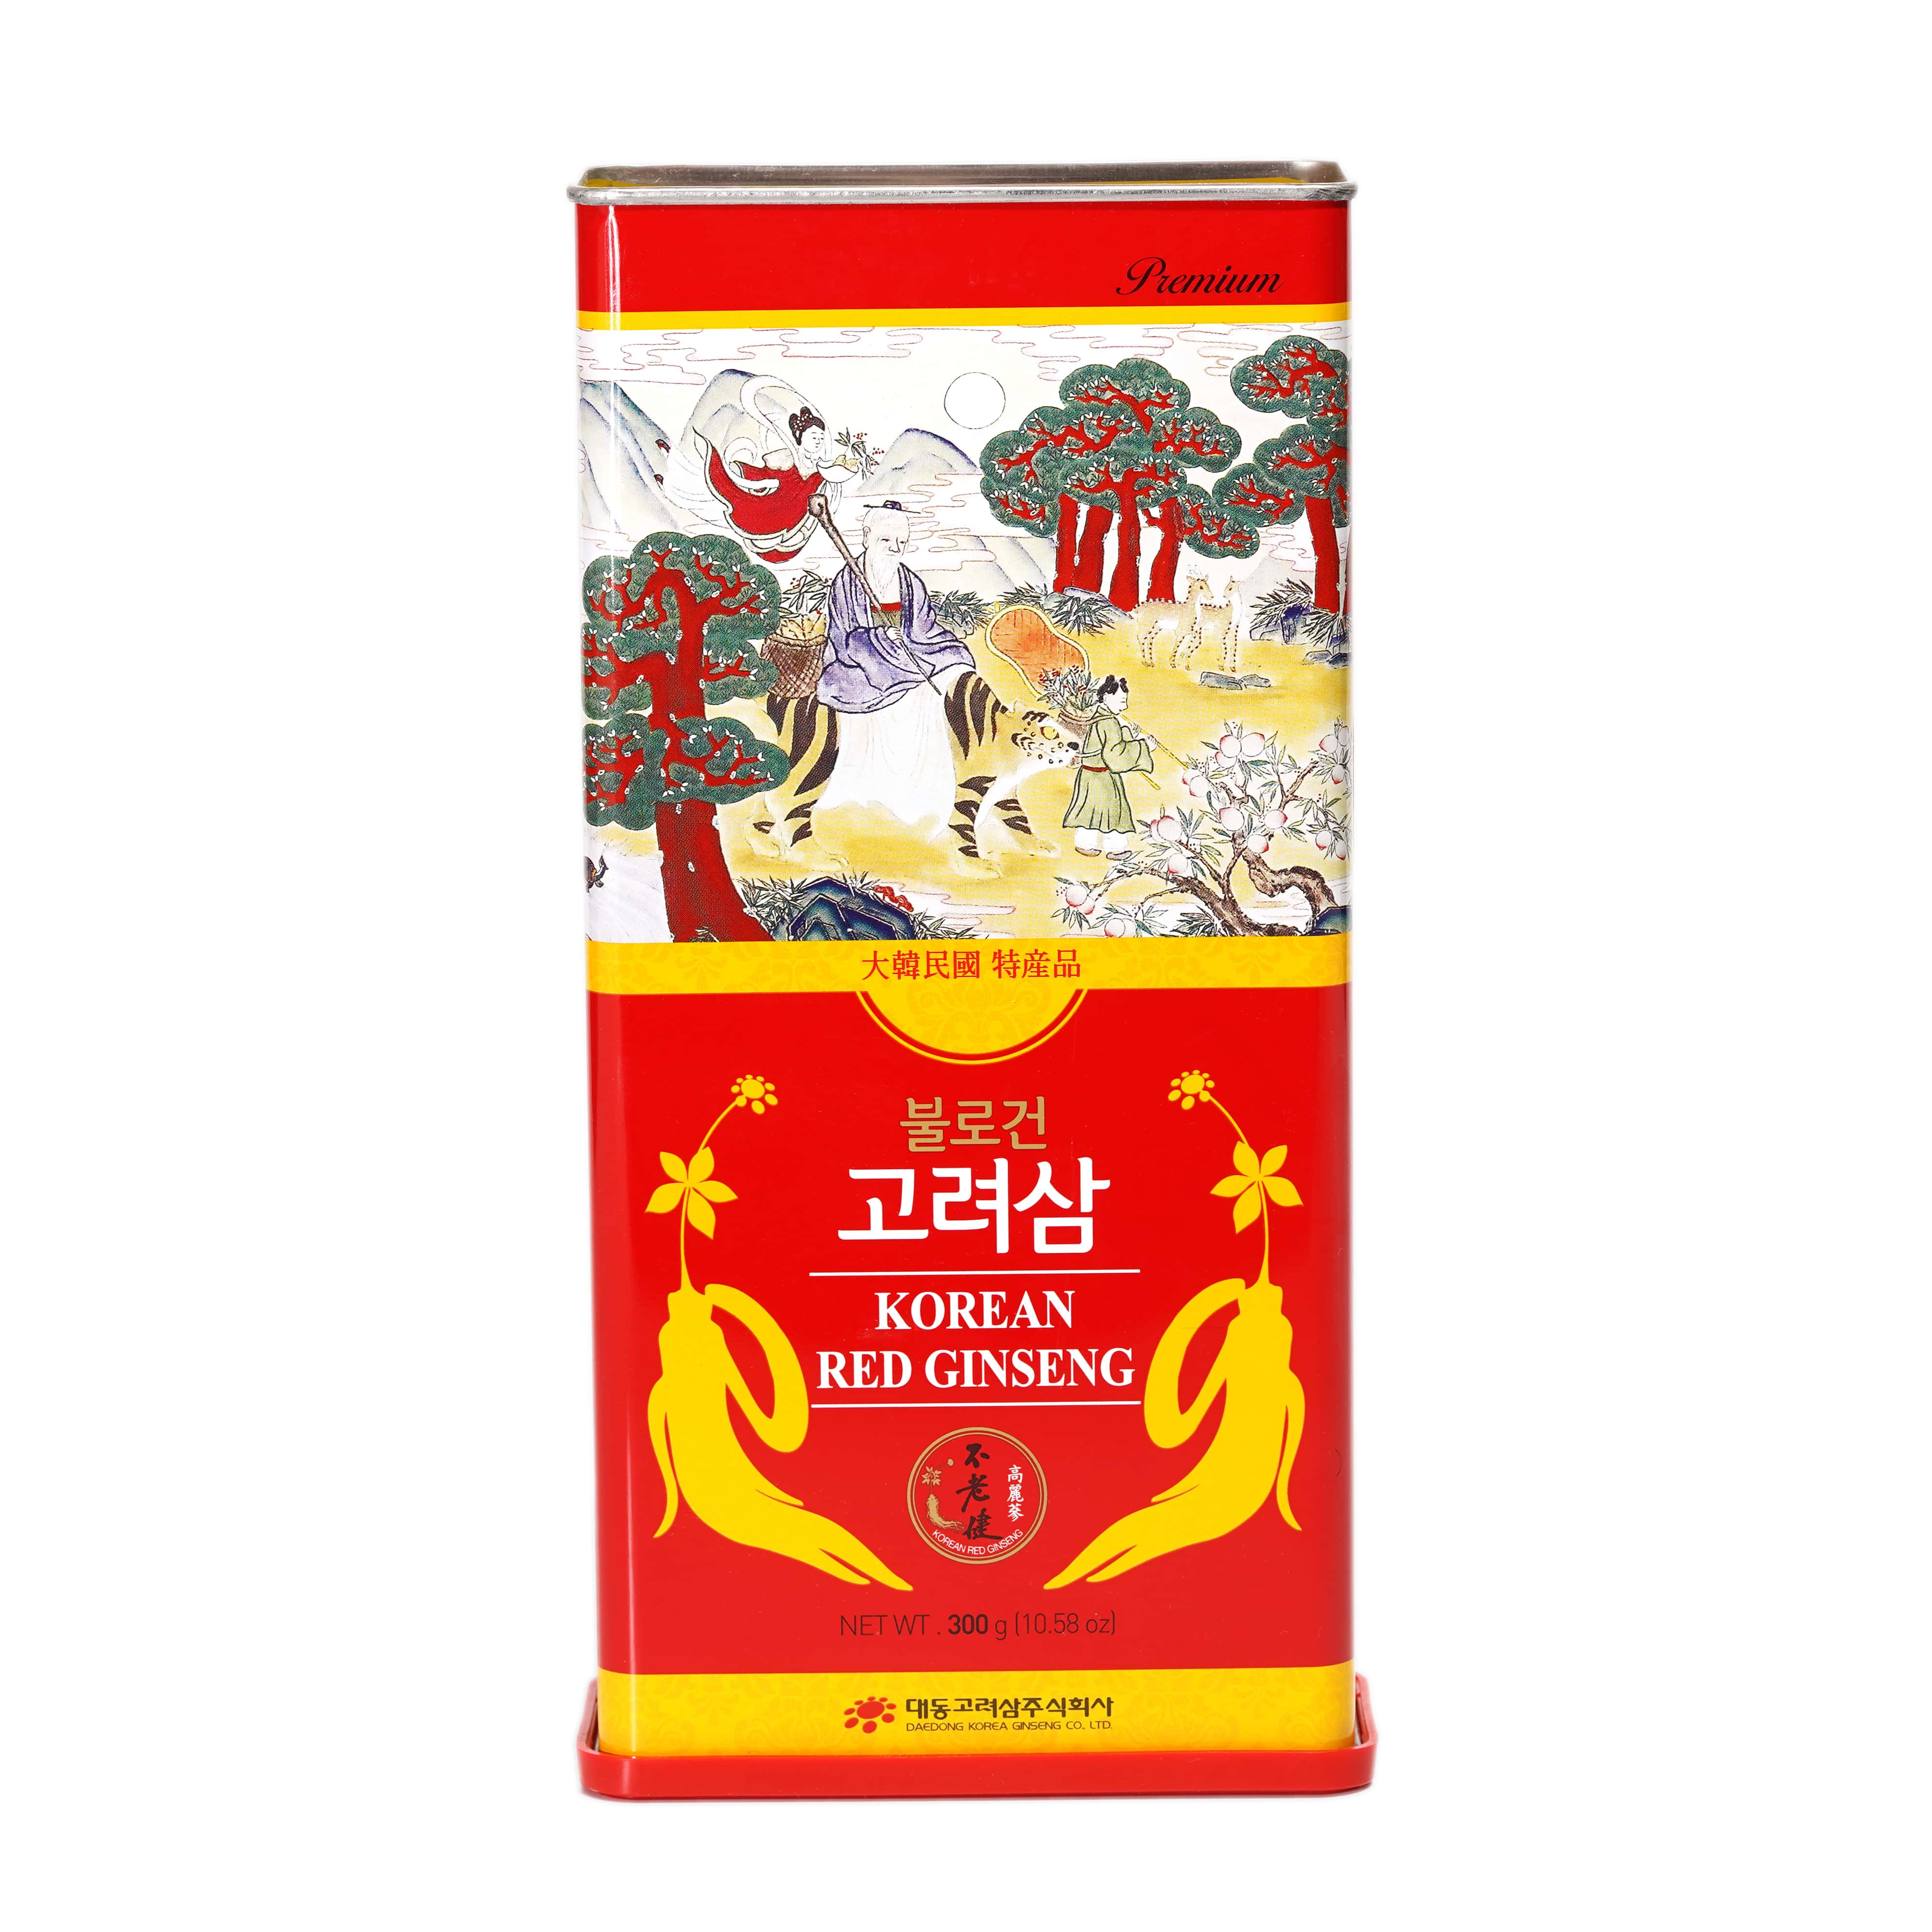 Hình ảnh Hồng sâm củ khô Hàn Quốc Daedong Korea Ginseng 300g dòng Premium củ nhỏ (11 -20 củ) - Tăng cường trí nhớ, hỗ trợ giảm mỡ máu, phòng ngừa tiểu đường, huyết áp